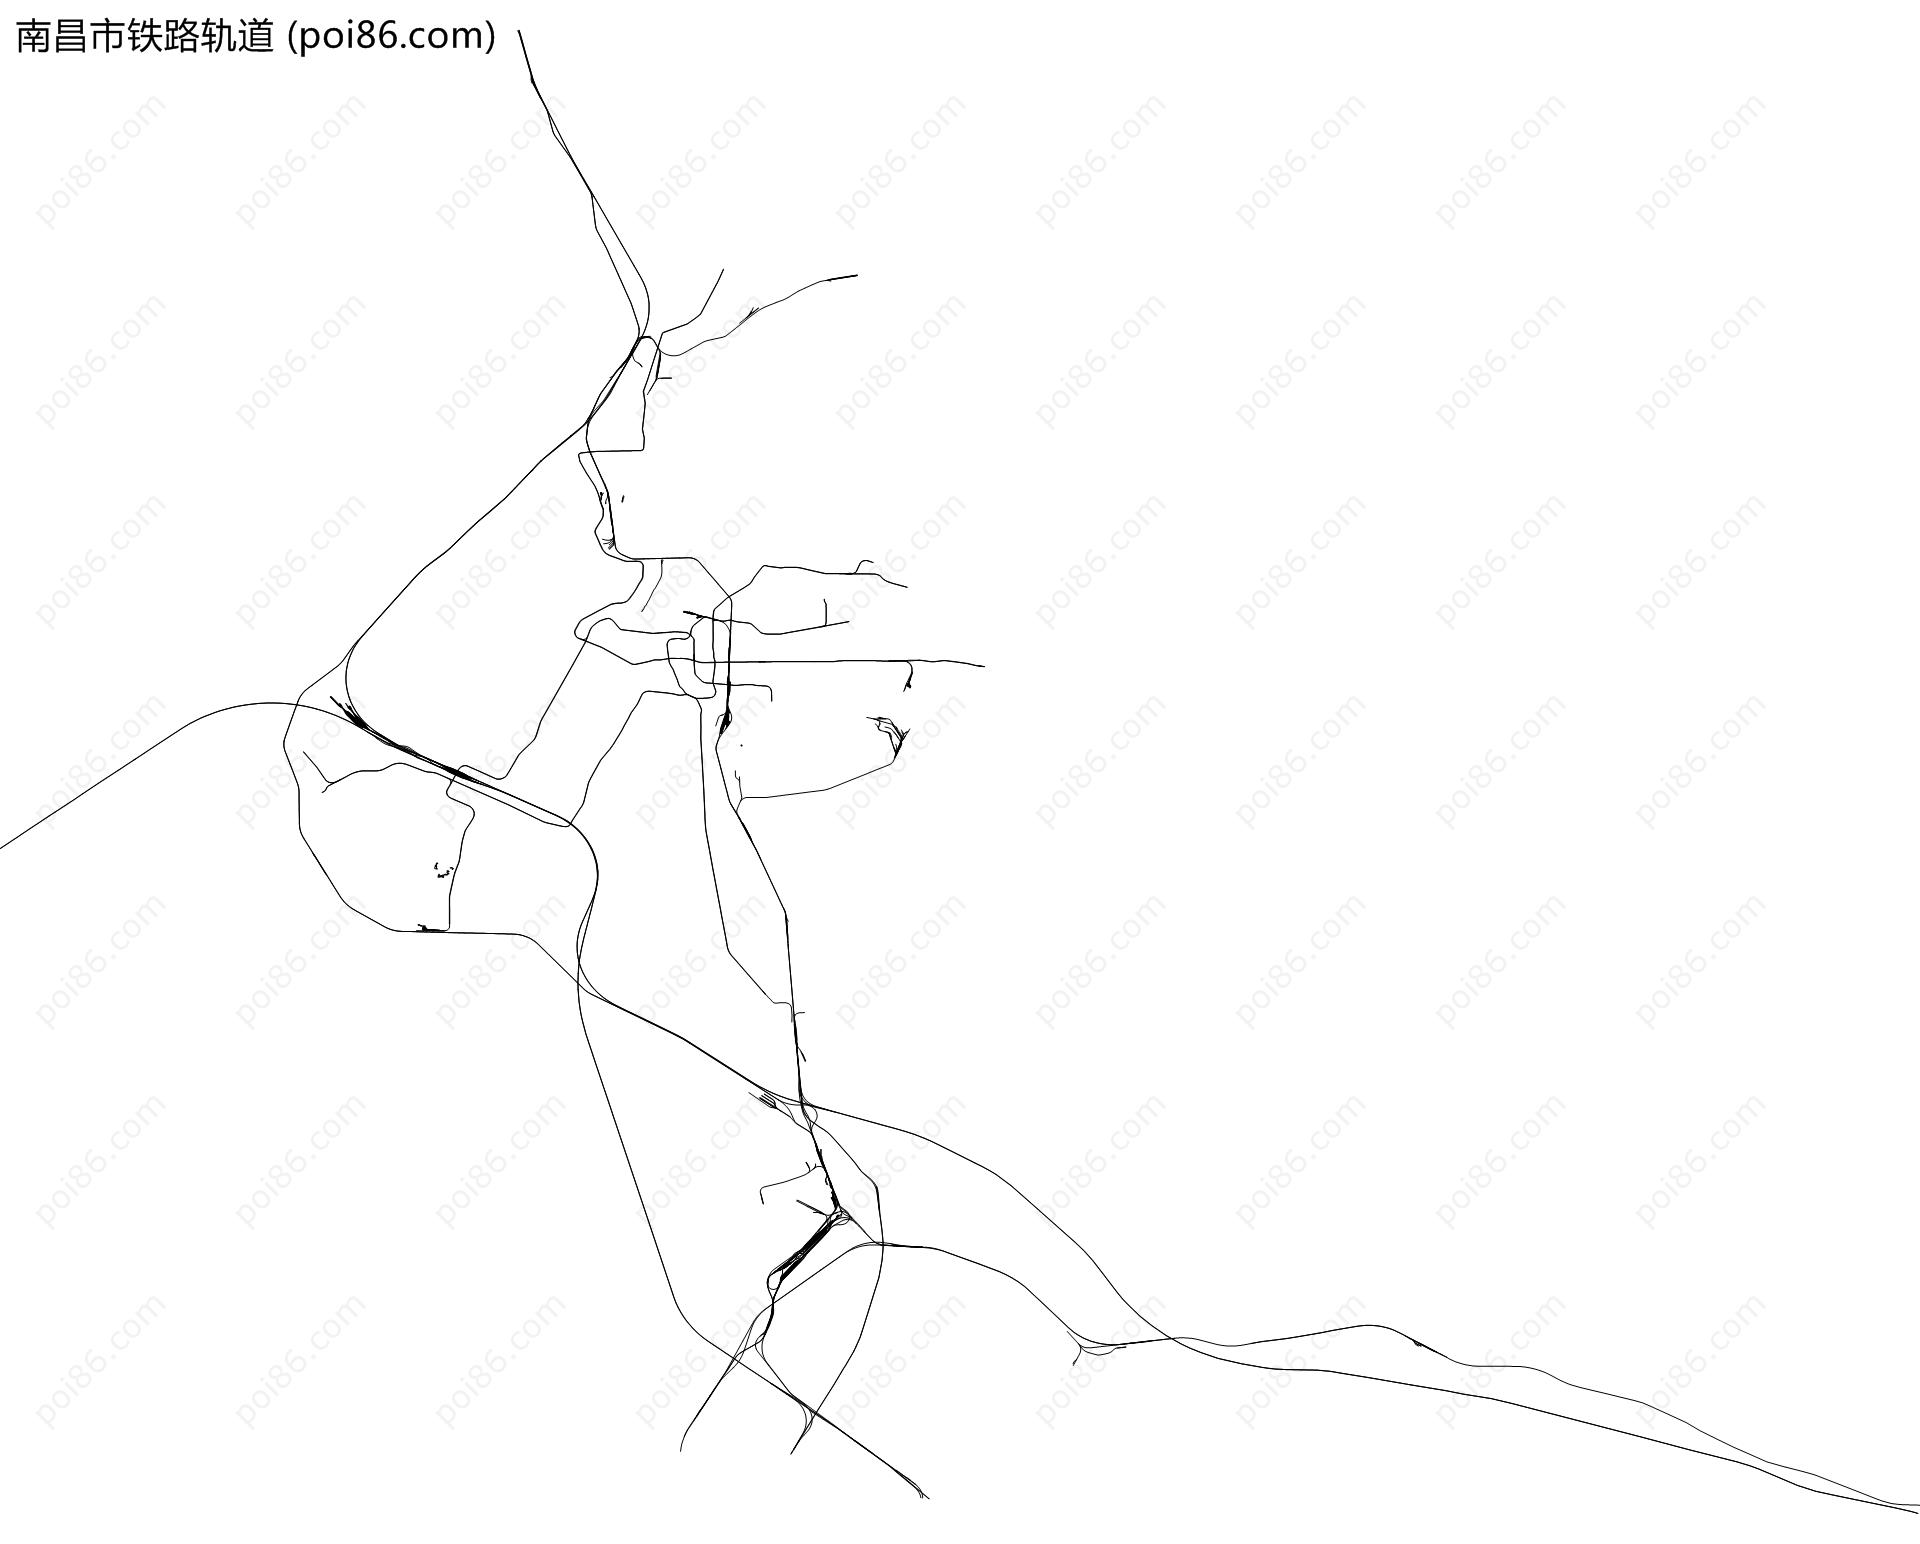 南昌市铁路轨道地图